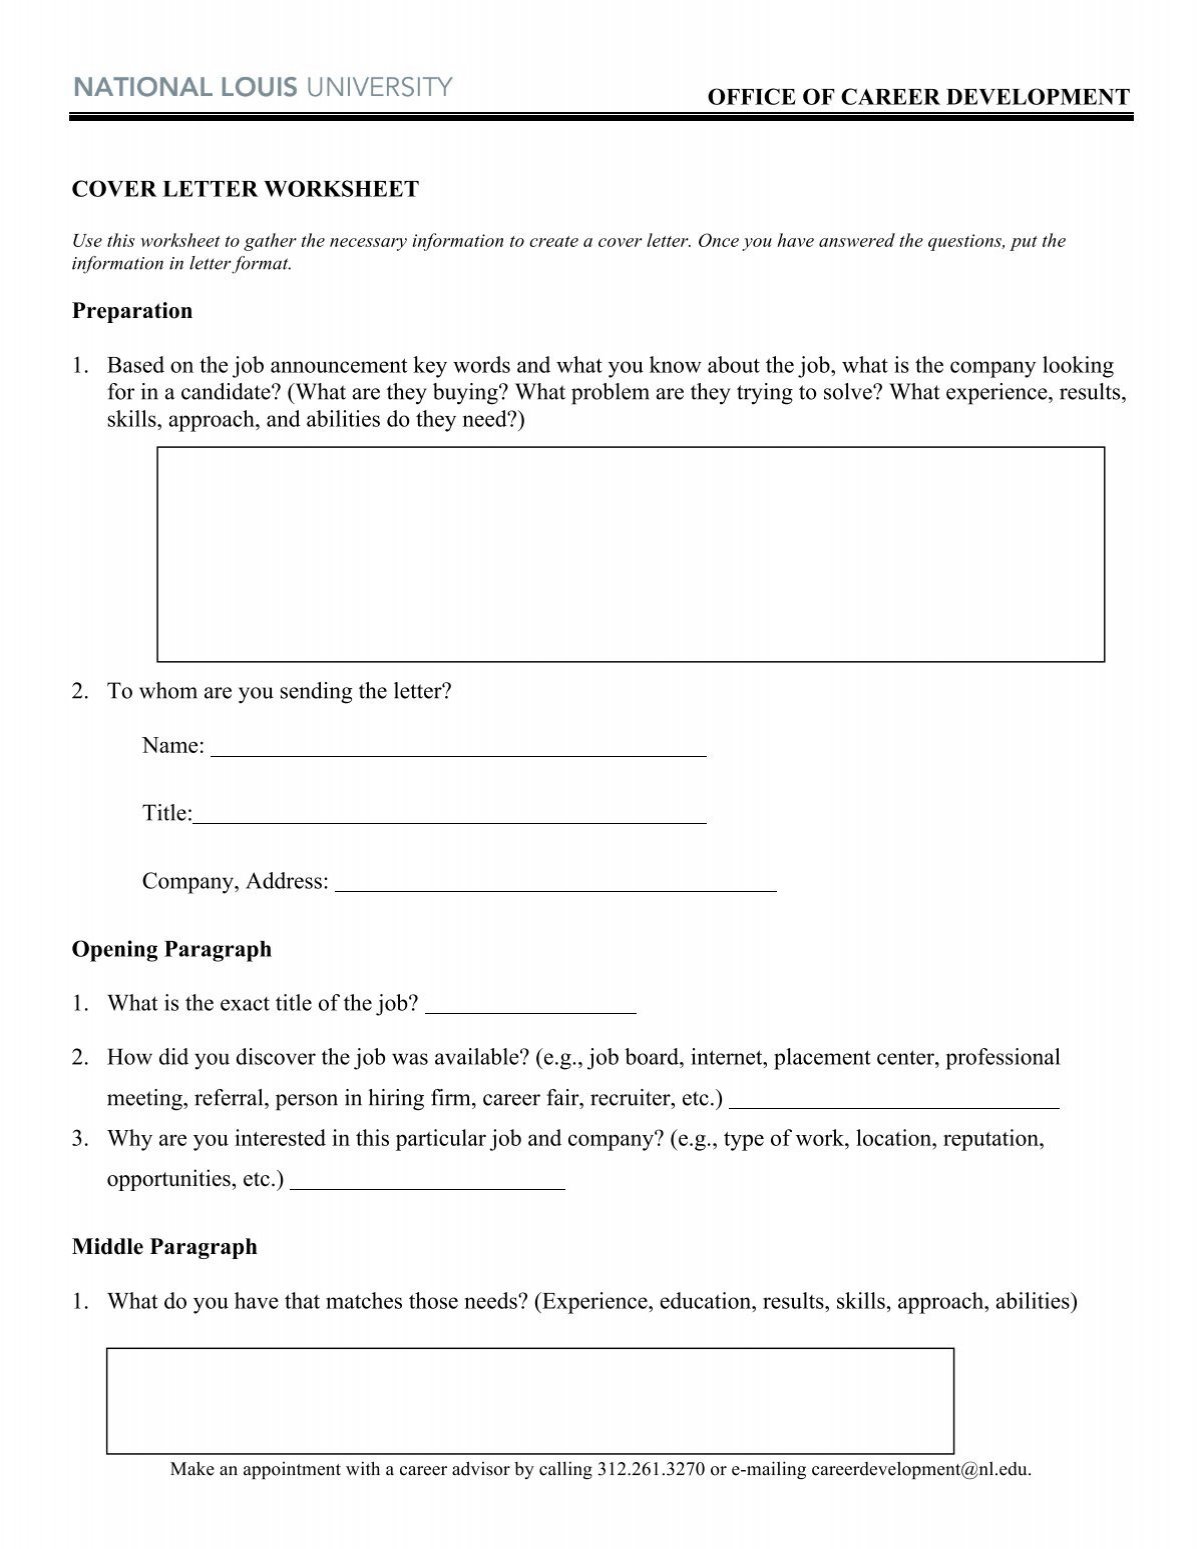 13-pdf-sample-cover-letter-worksheet-free-printable-download-docx-zip-sampleworksheet